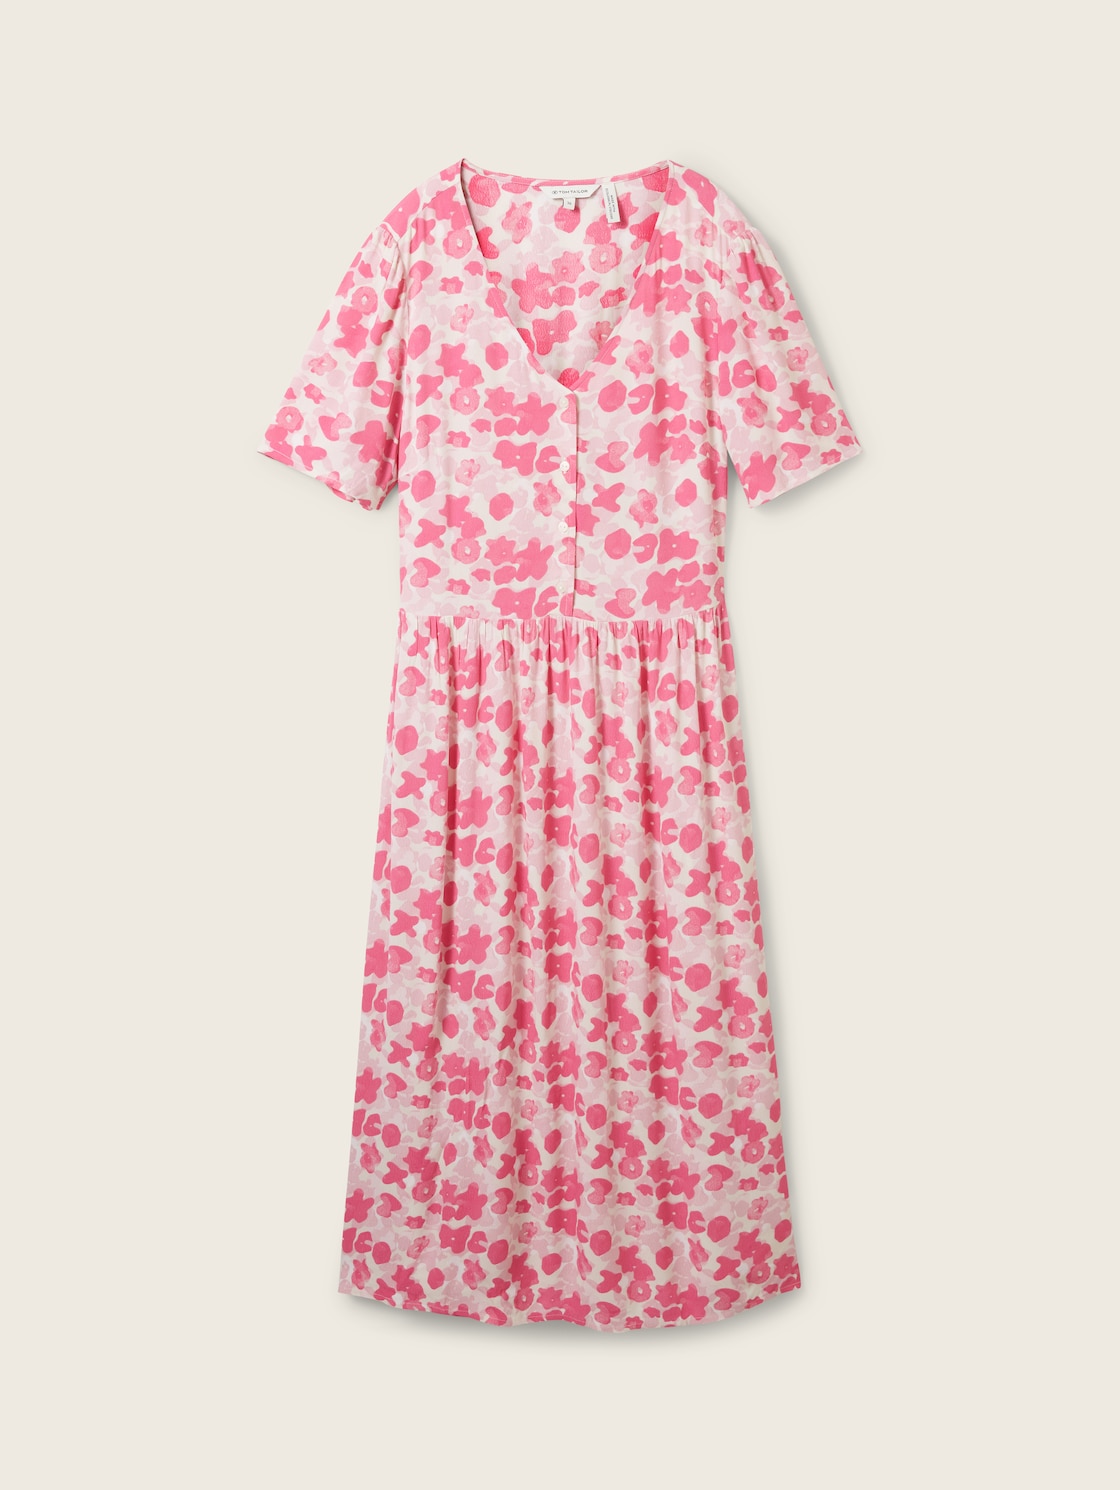 TOM TAILOR Damen Kleid mit Print, rosa, Allover Print, Gr. 36 von Tom Tailor